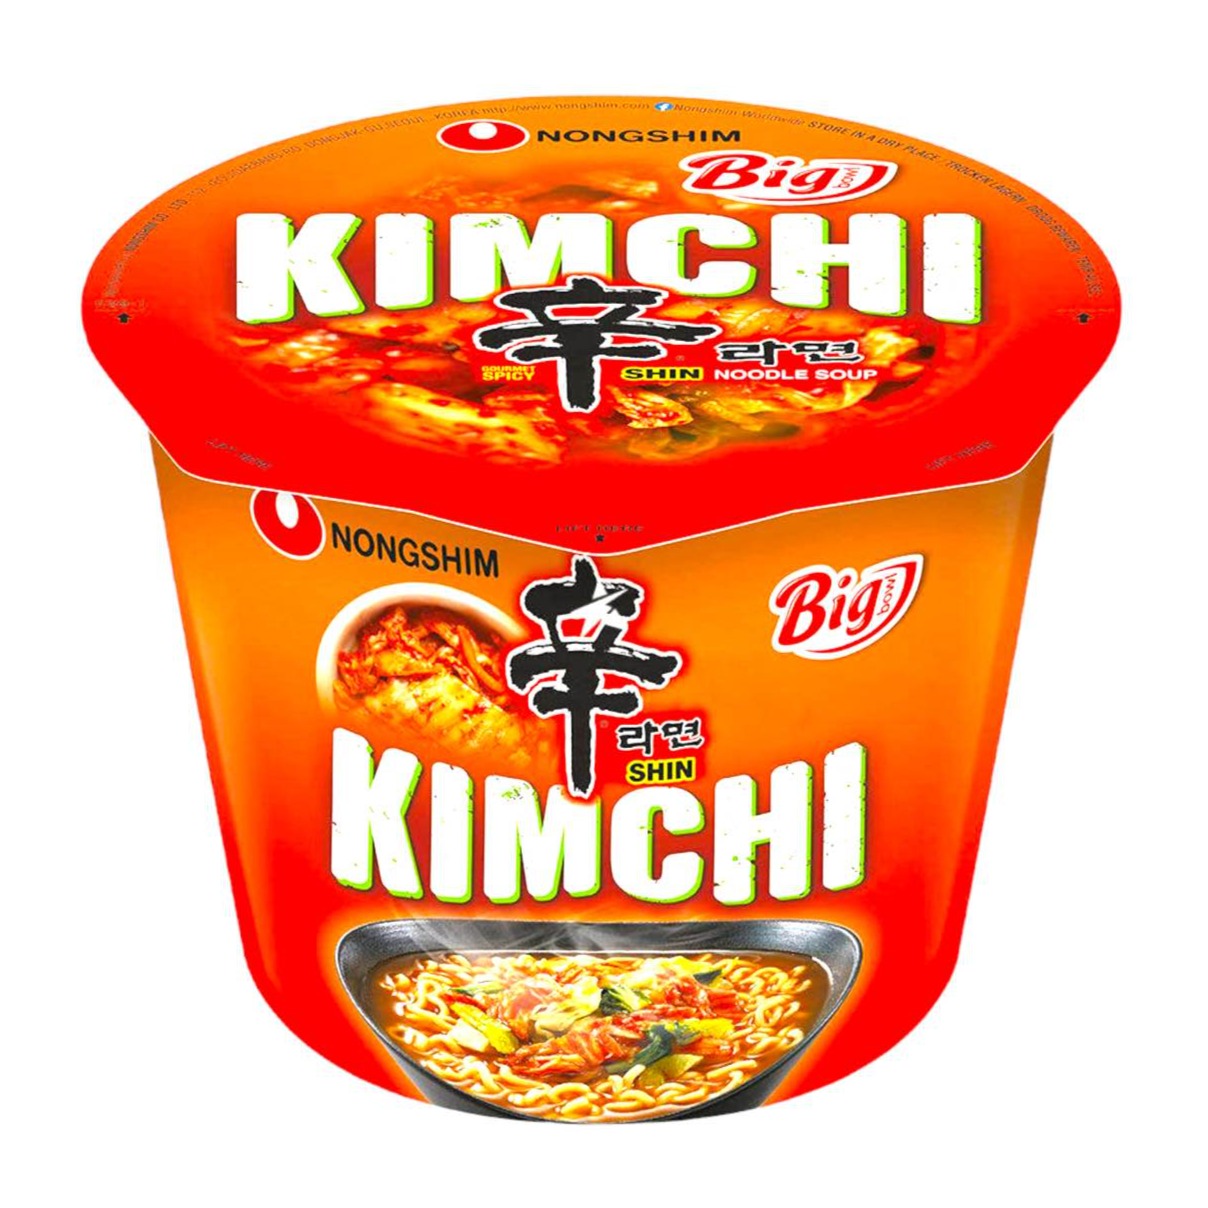 Kimchi Ramen (Big Bowl) 112g - Nongshim